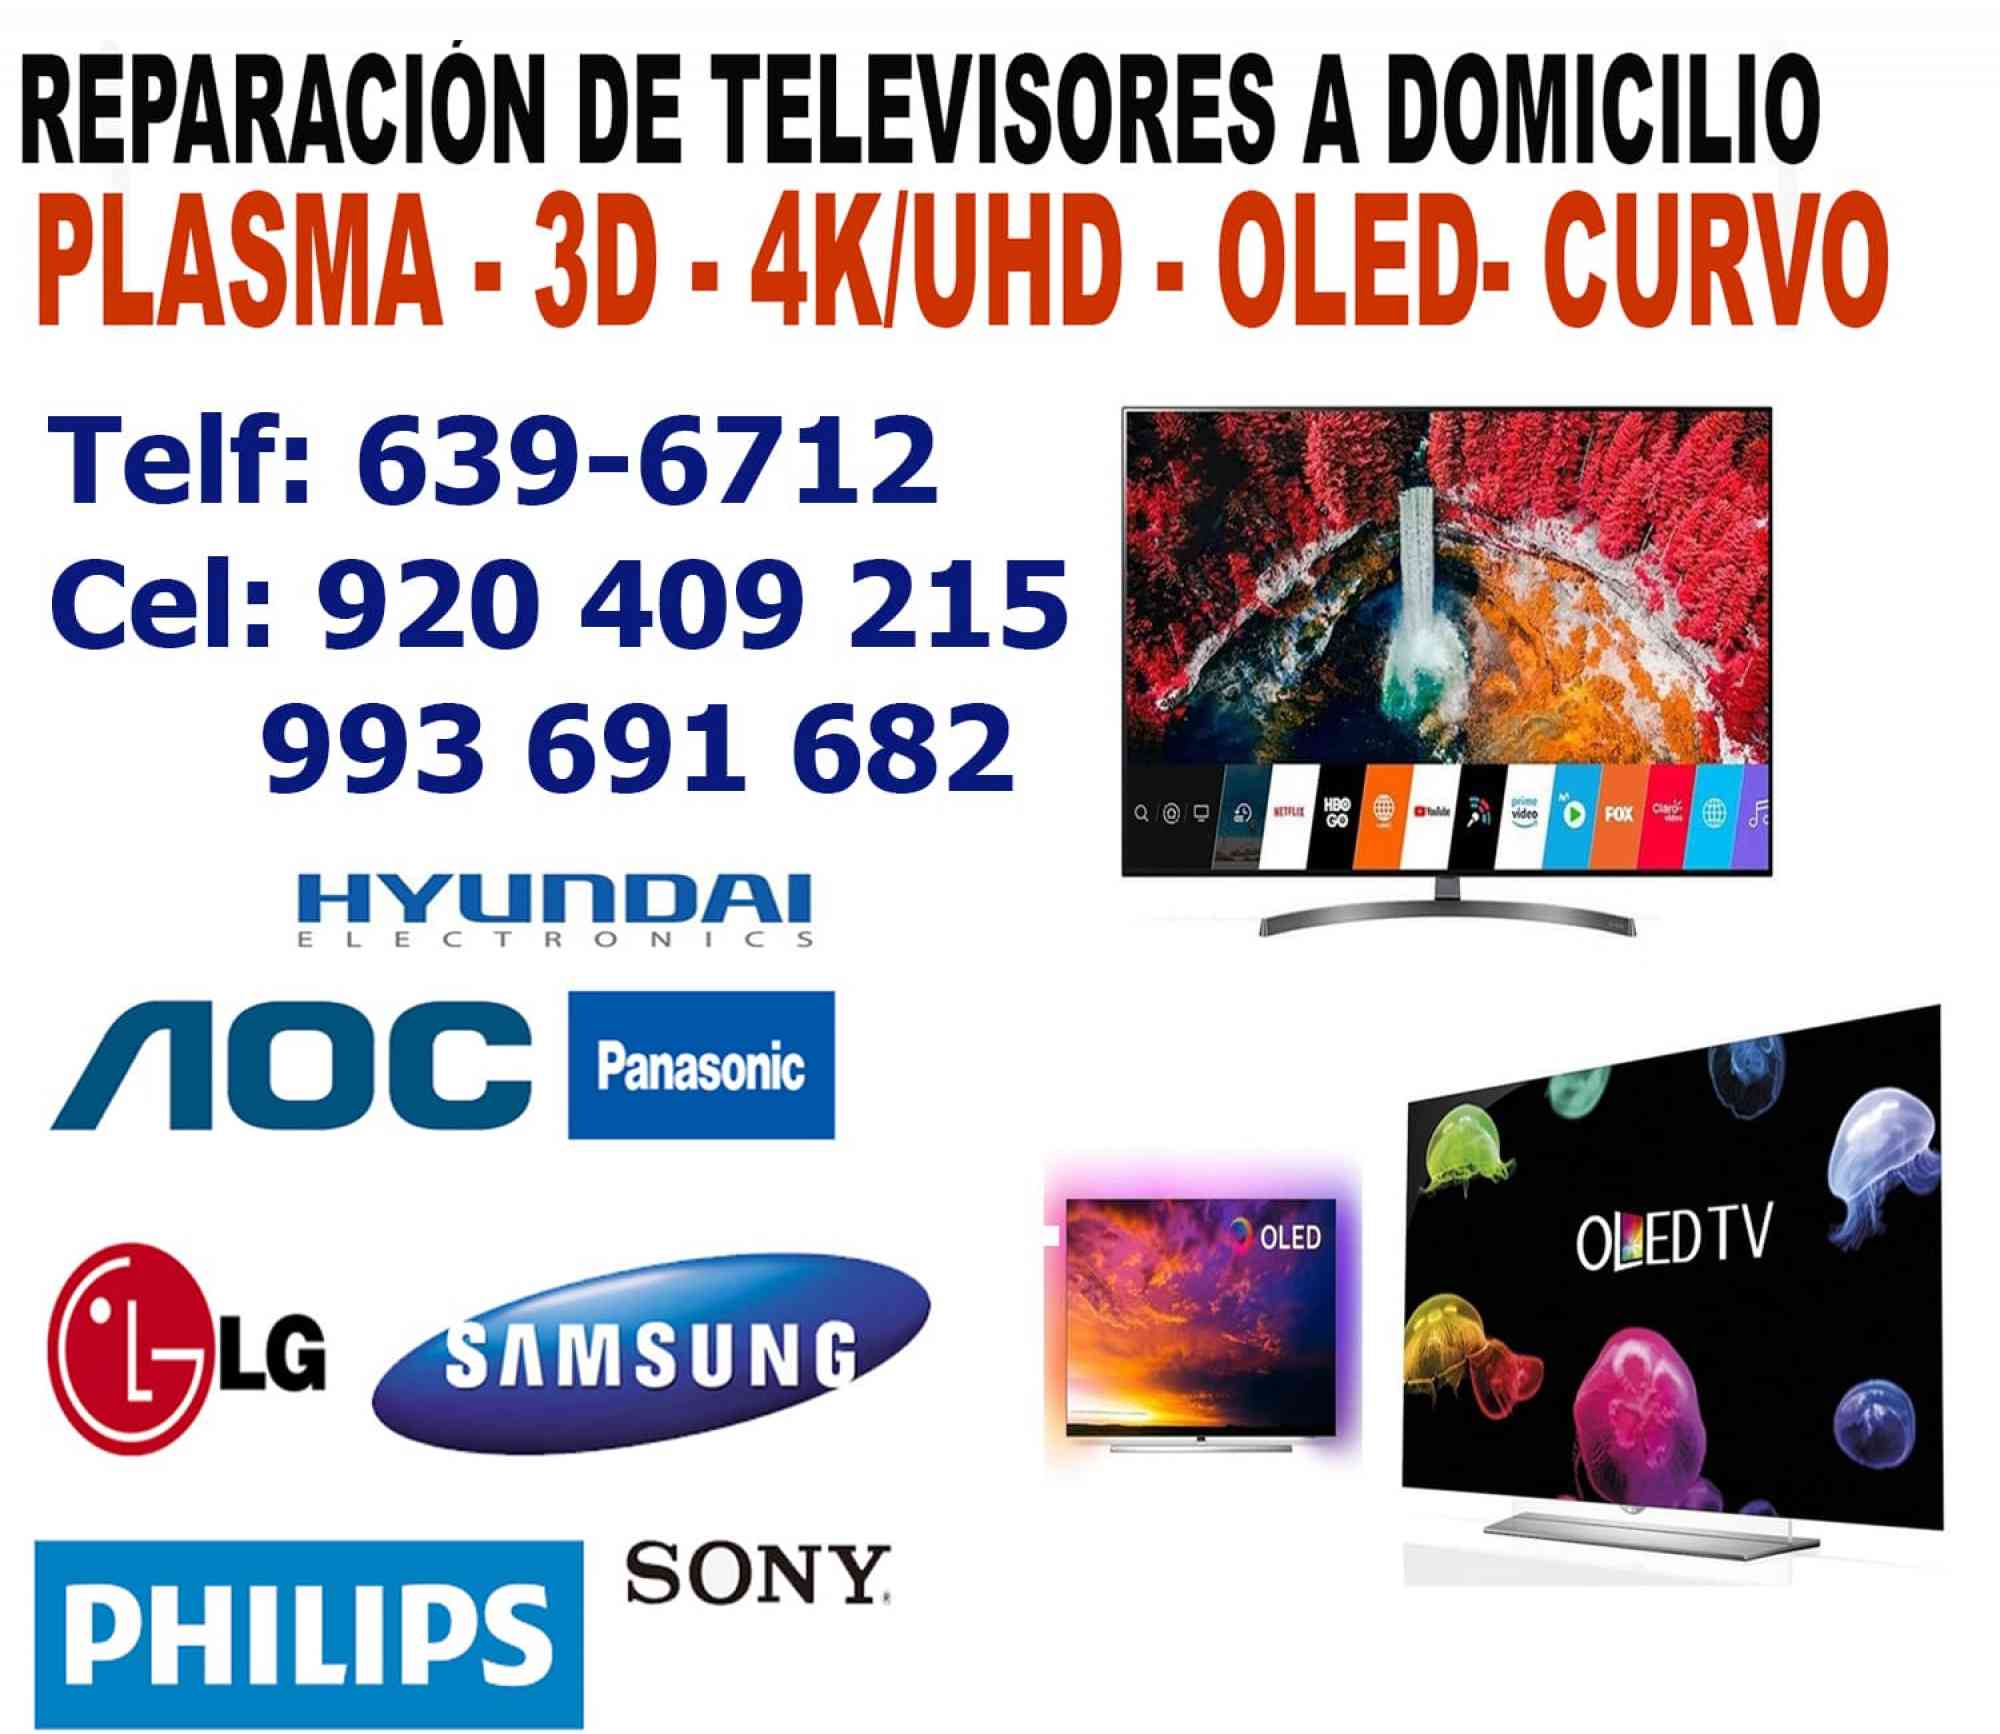 REPARACIÓN DE TELEVISORES 920-409-215 LG